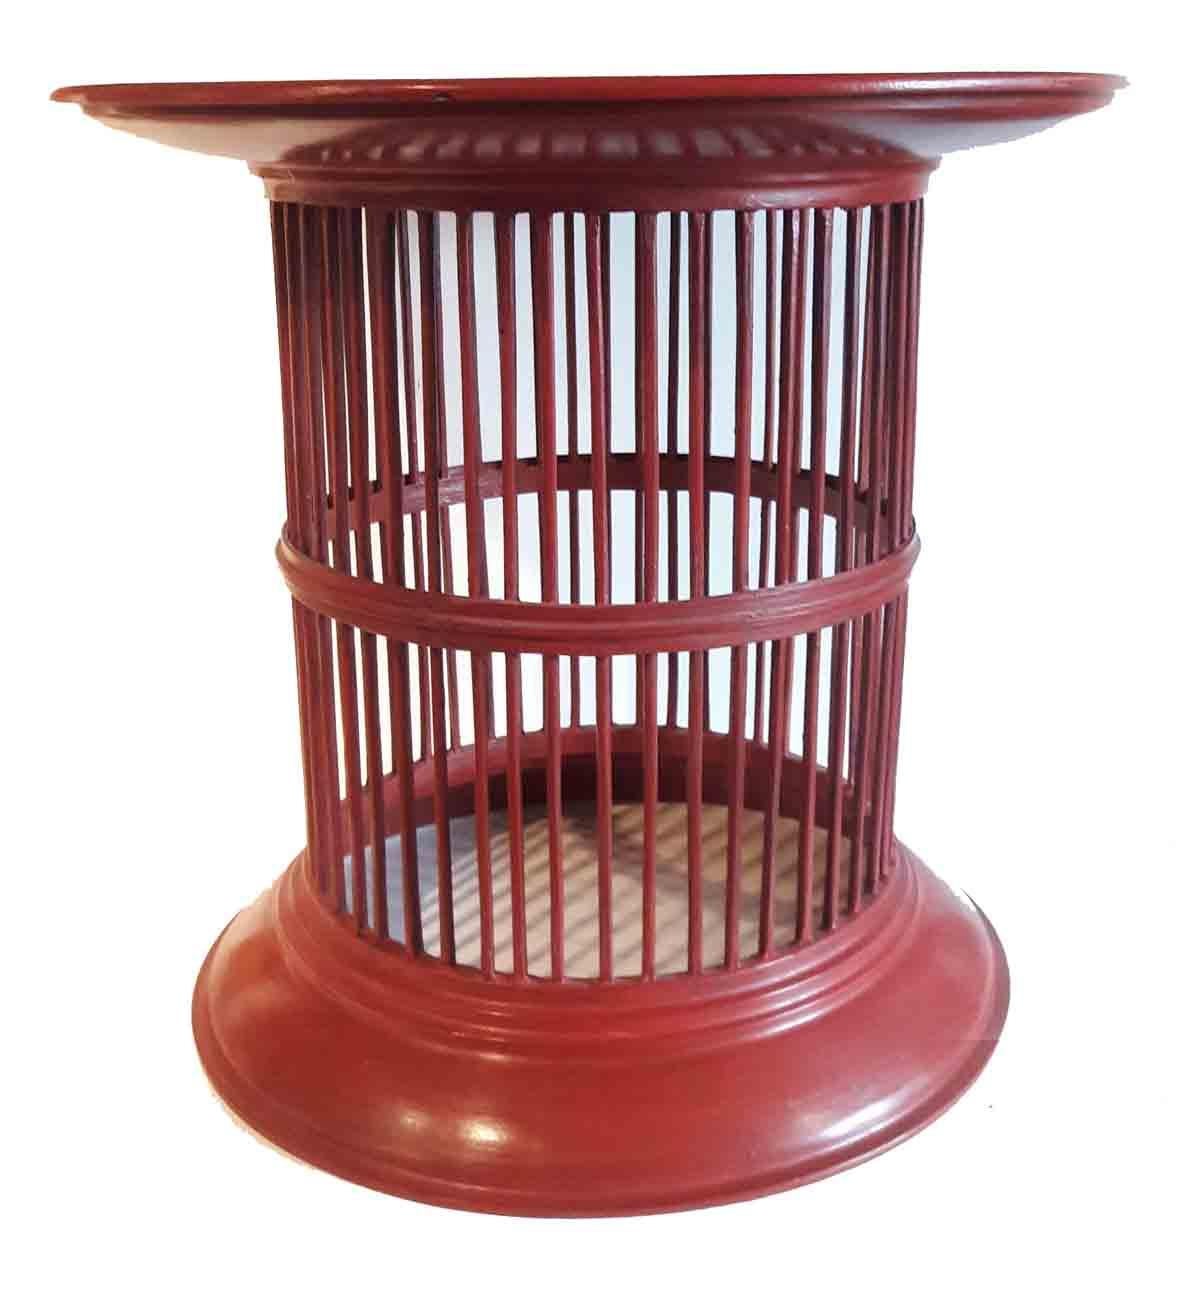 Ein lackierter Bambus-Trommeltisch aus Thailand, Contemporary. Diese leichten und dennoch stabilen Tische können jedem Raum mit eklektischem Dekor einen auffälligen Farbtupfer verleihen. Erhältlich in rot und grün.